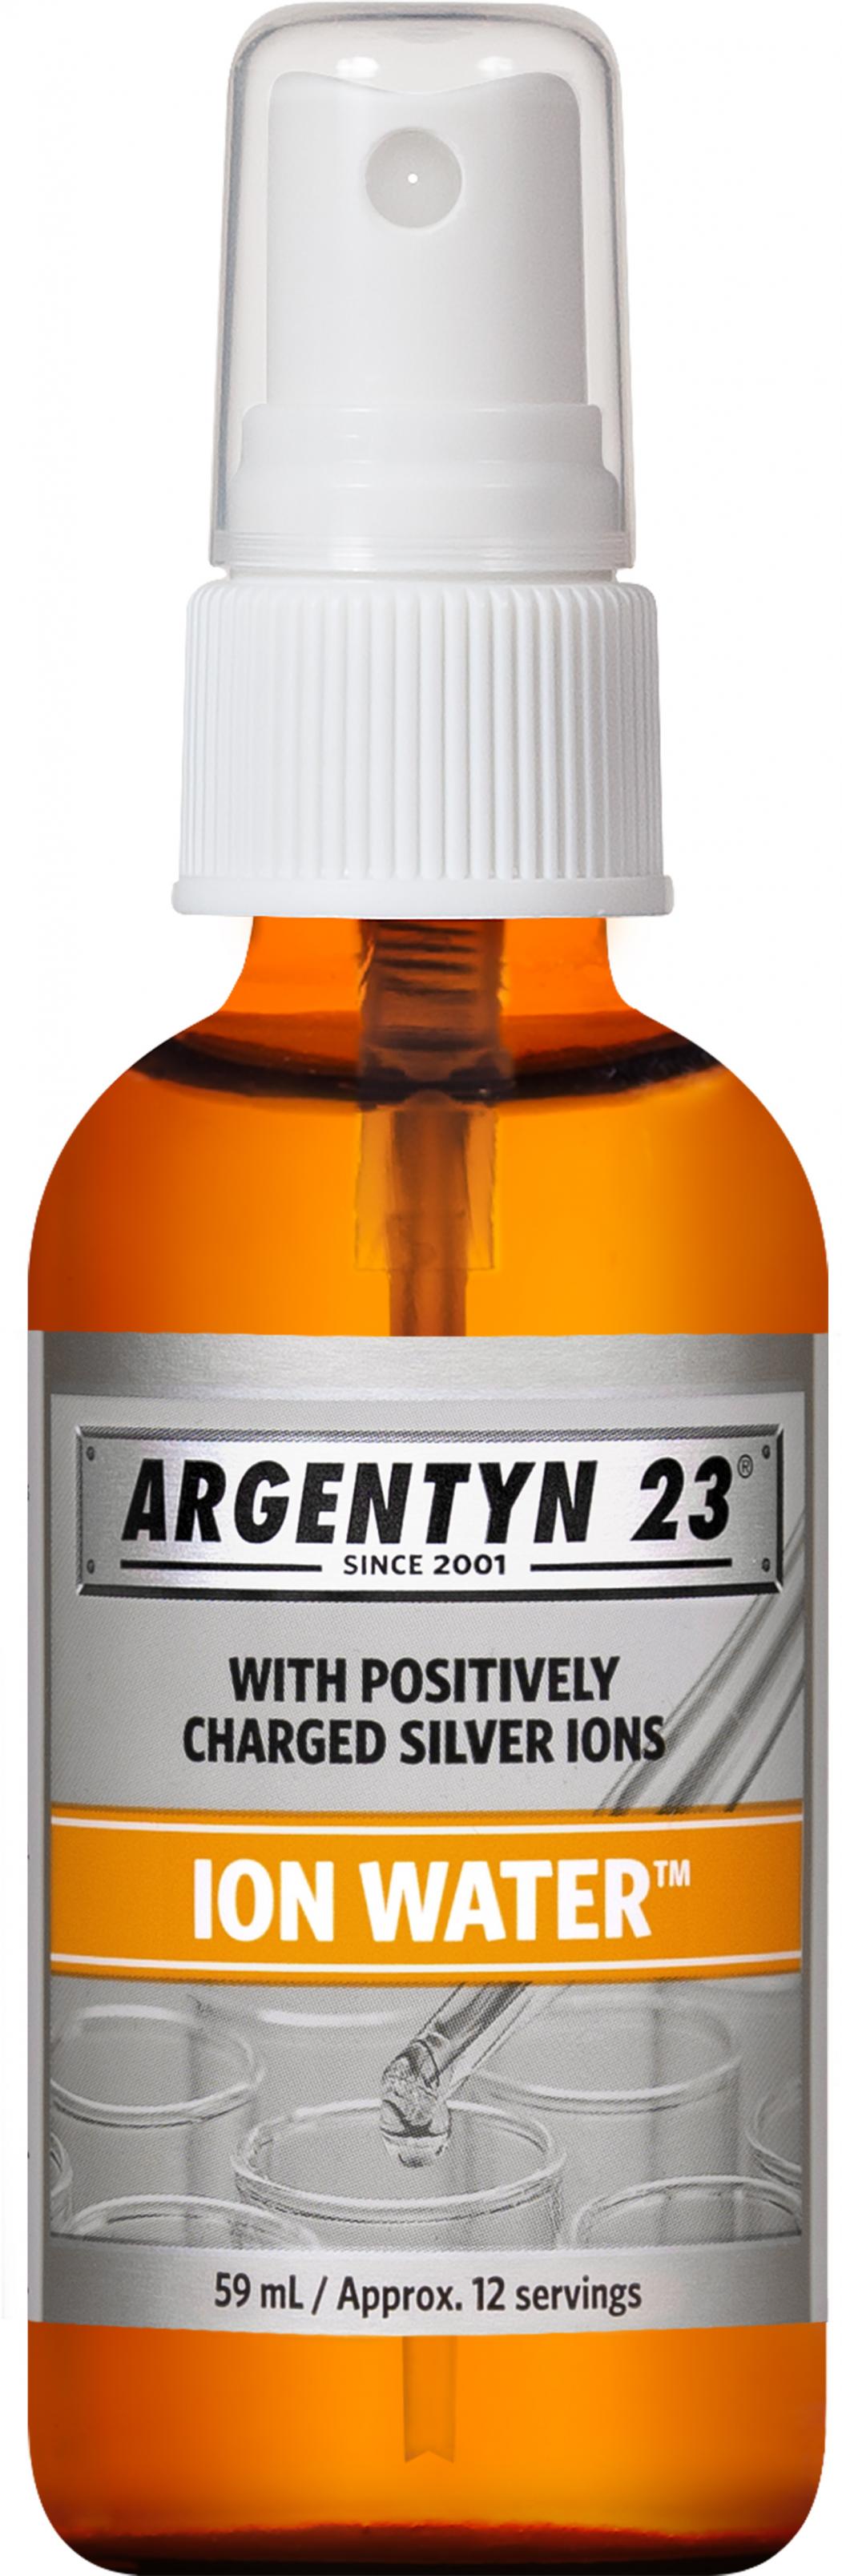 Argentyn 23 ION Water (Mist Spray) - 59ml | Natural Immunogenics